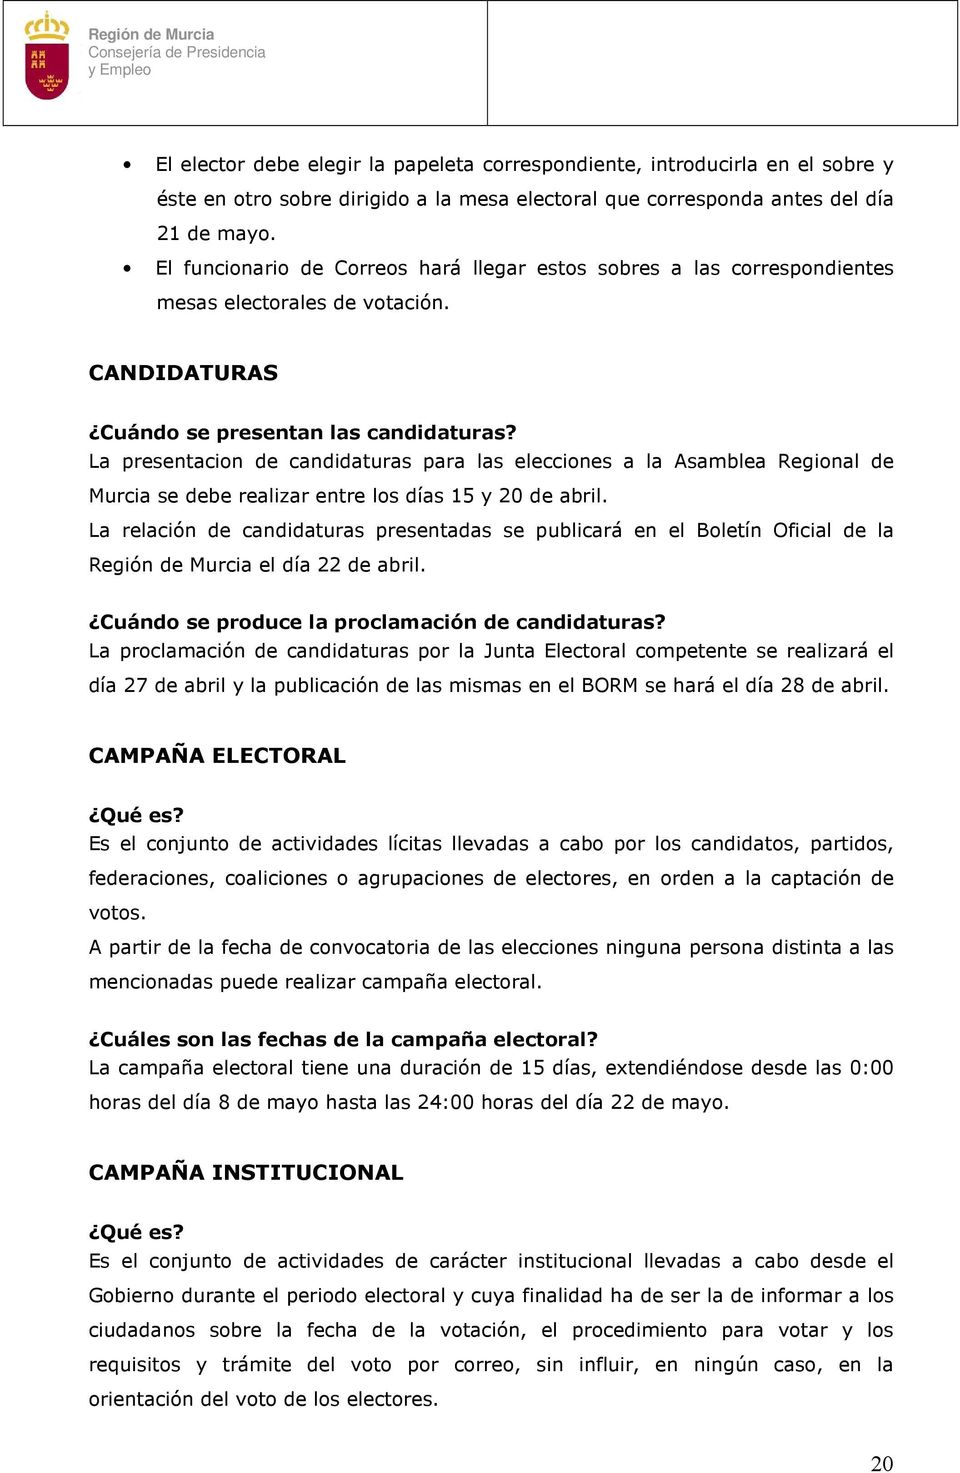 La presentacion de candidaturas para las elecciones a la Asamblea Regional de Murcia se debe realizar entre los días 15 y 20 de abril.